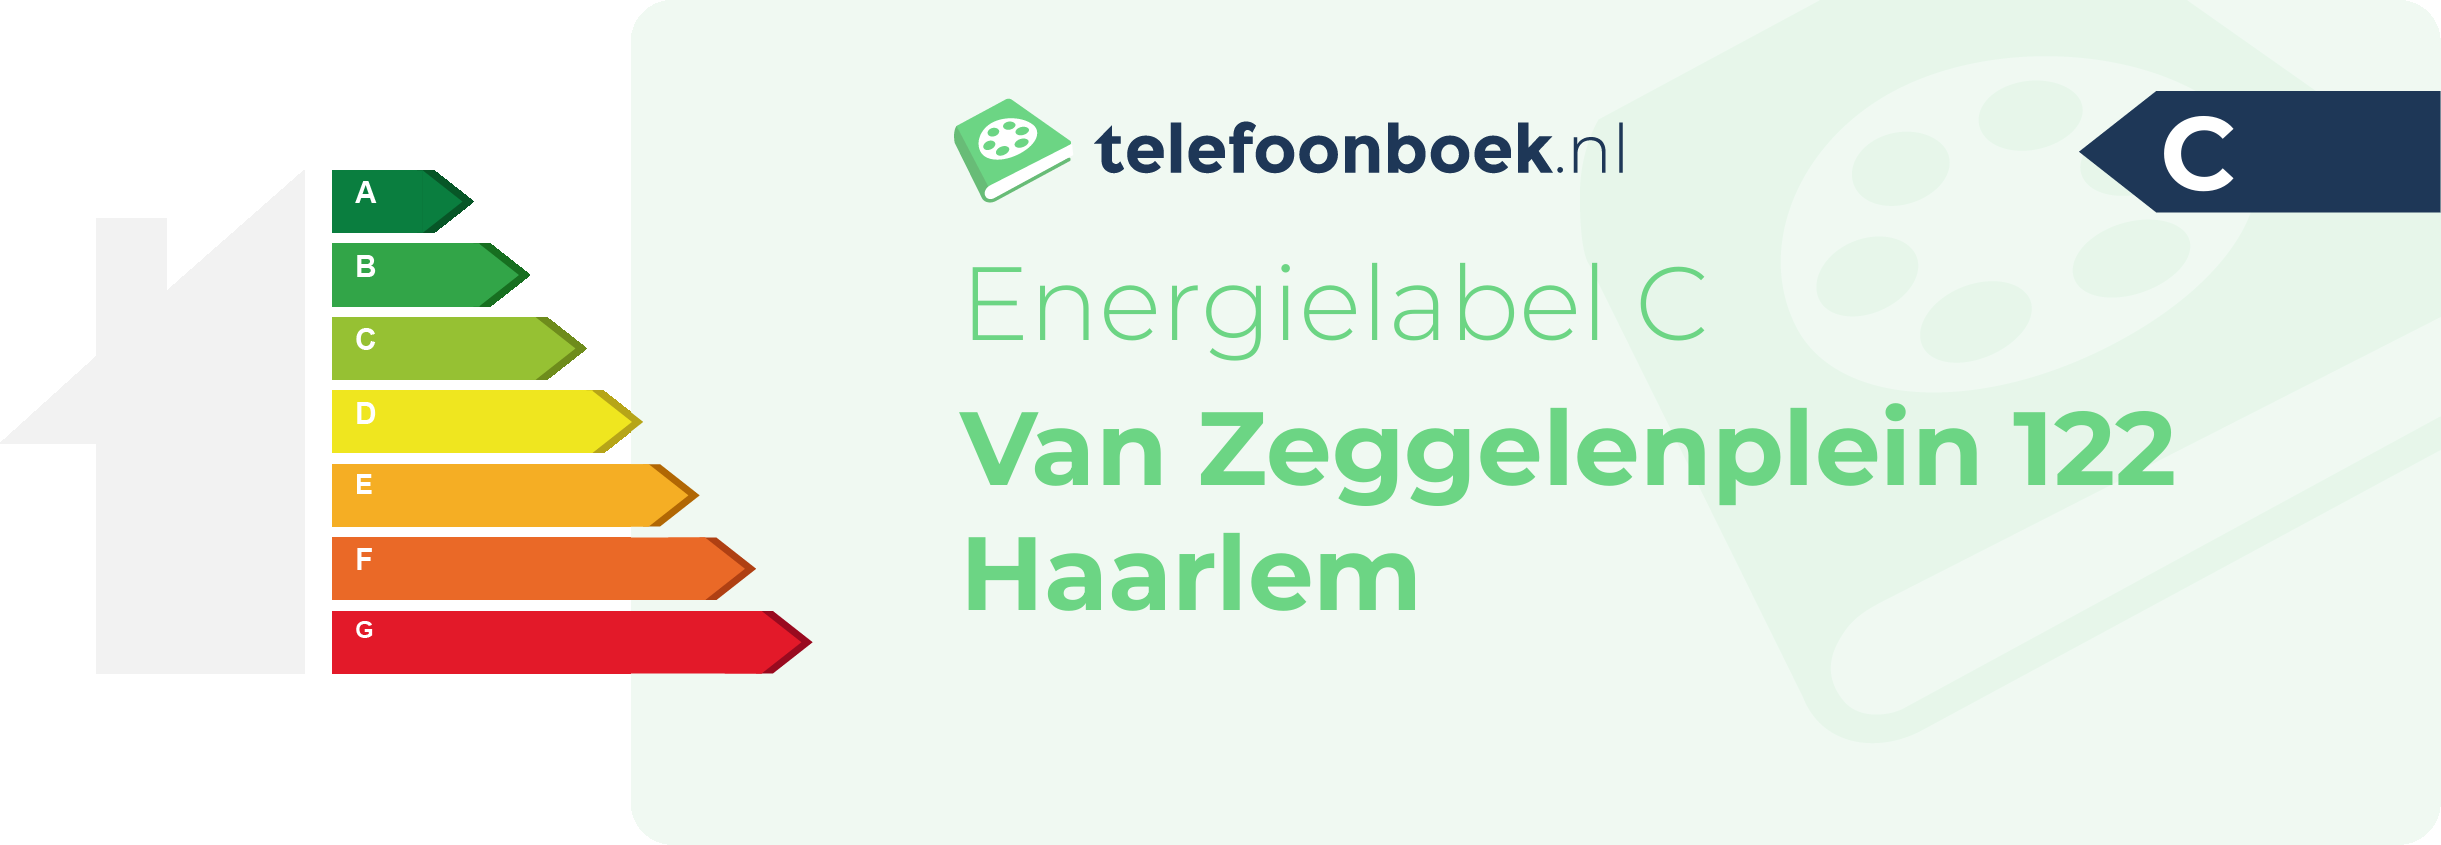 Energielabel Van Zeggelenplein 122 Haarlem